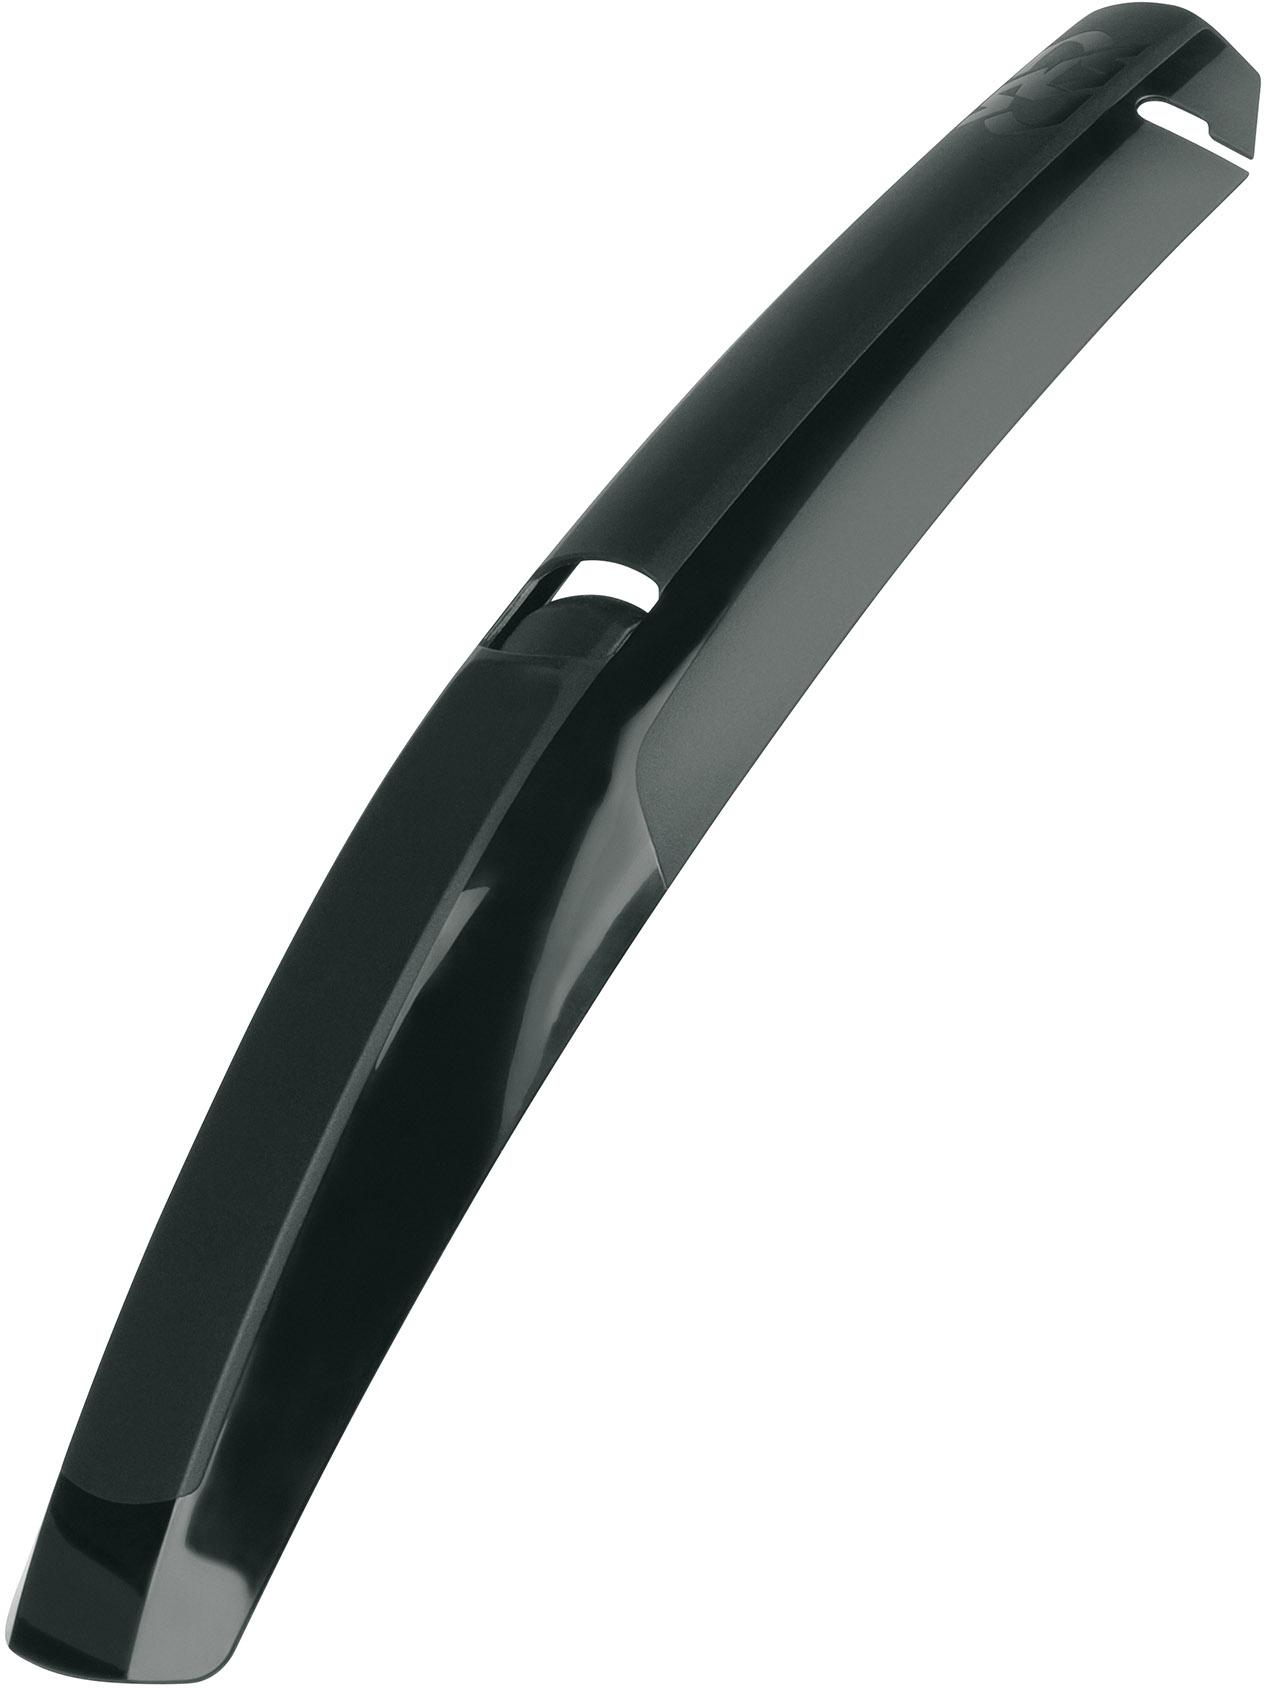 Sks Speedrocker Extension Flap - Black